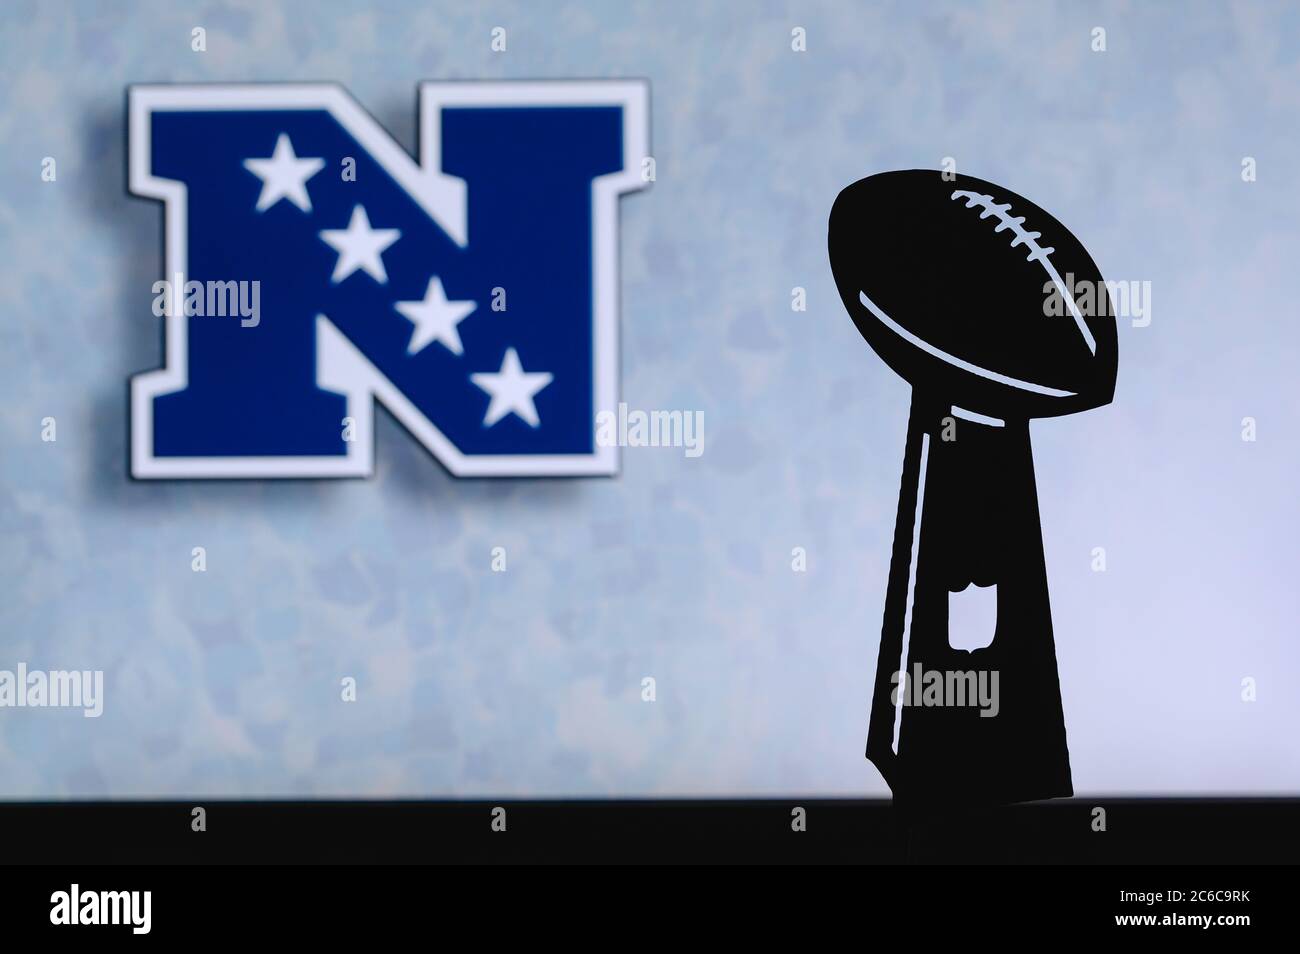 Conferencia Nacional de Fútbol – NFC, club de fútbol americano profesional, silueta de la NFL trofeo, logotipo del club en el fondo. Foto de stock